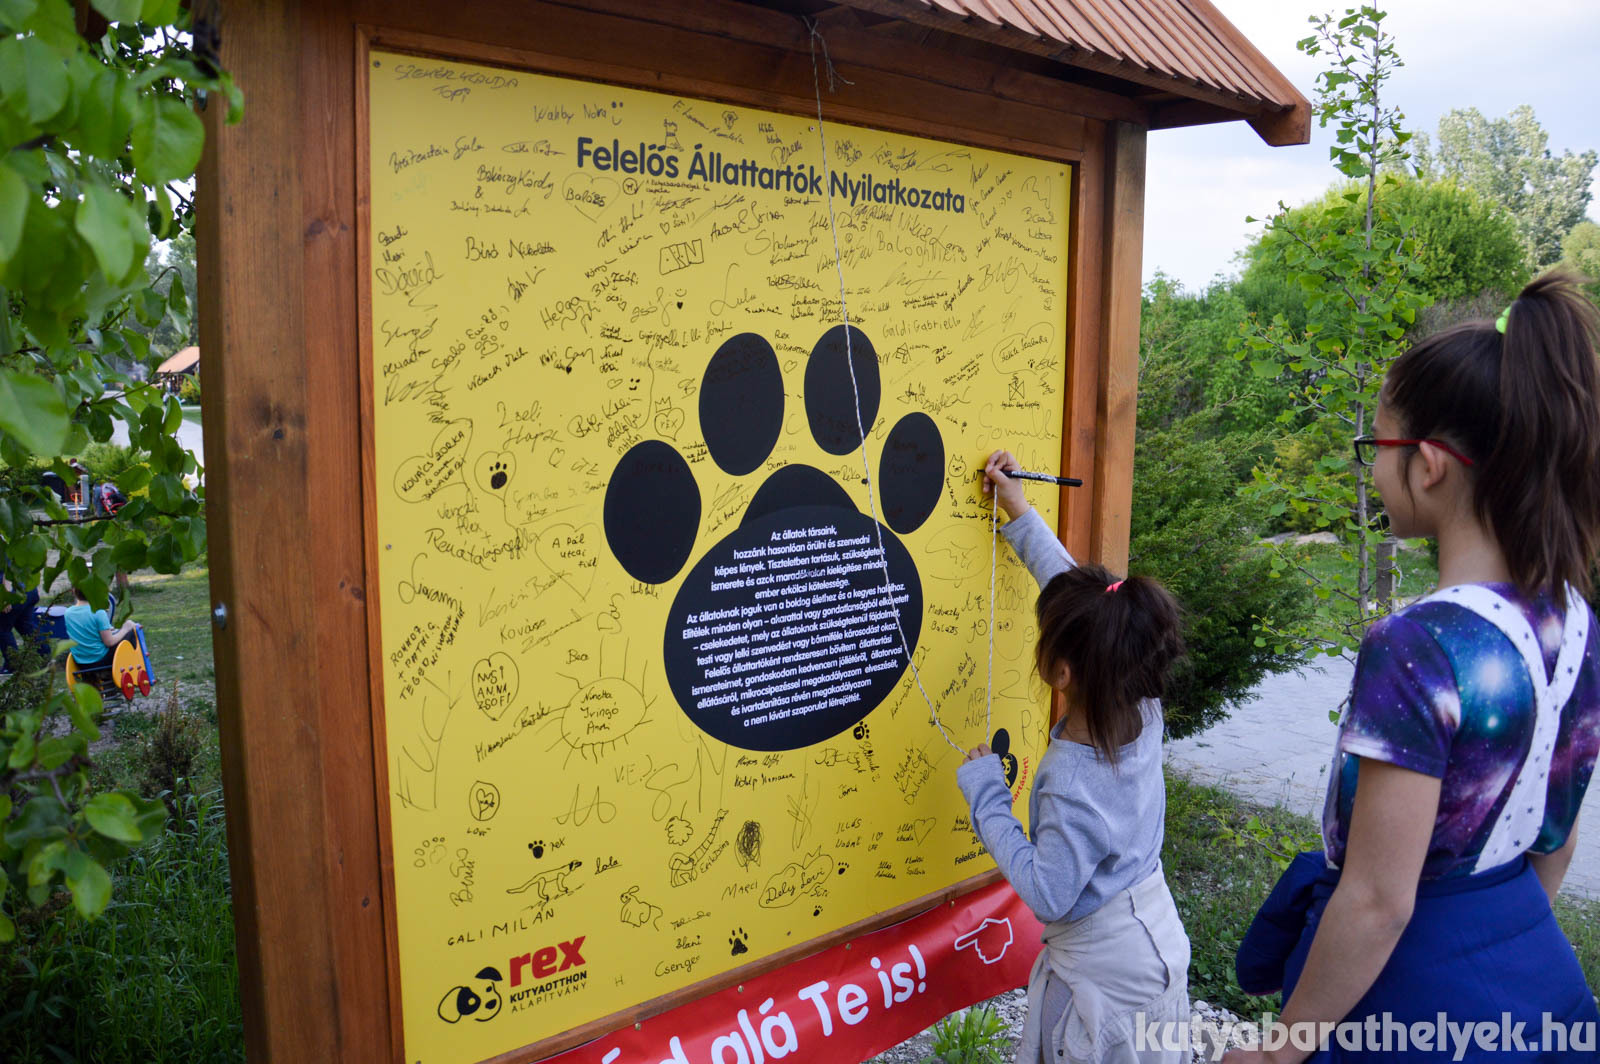 Már a Felelős Állattartás Napján is rengetegen aláírták a Felelős Állattartók Nyilatkozatát